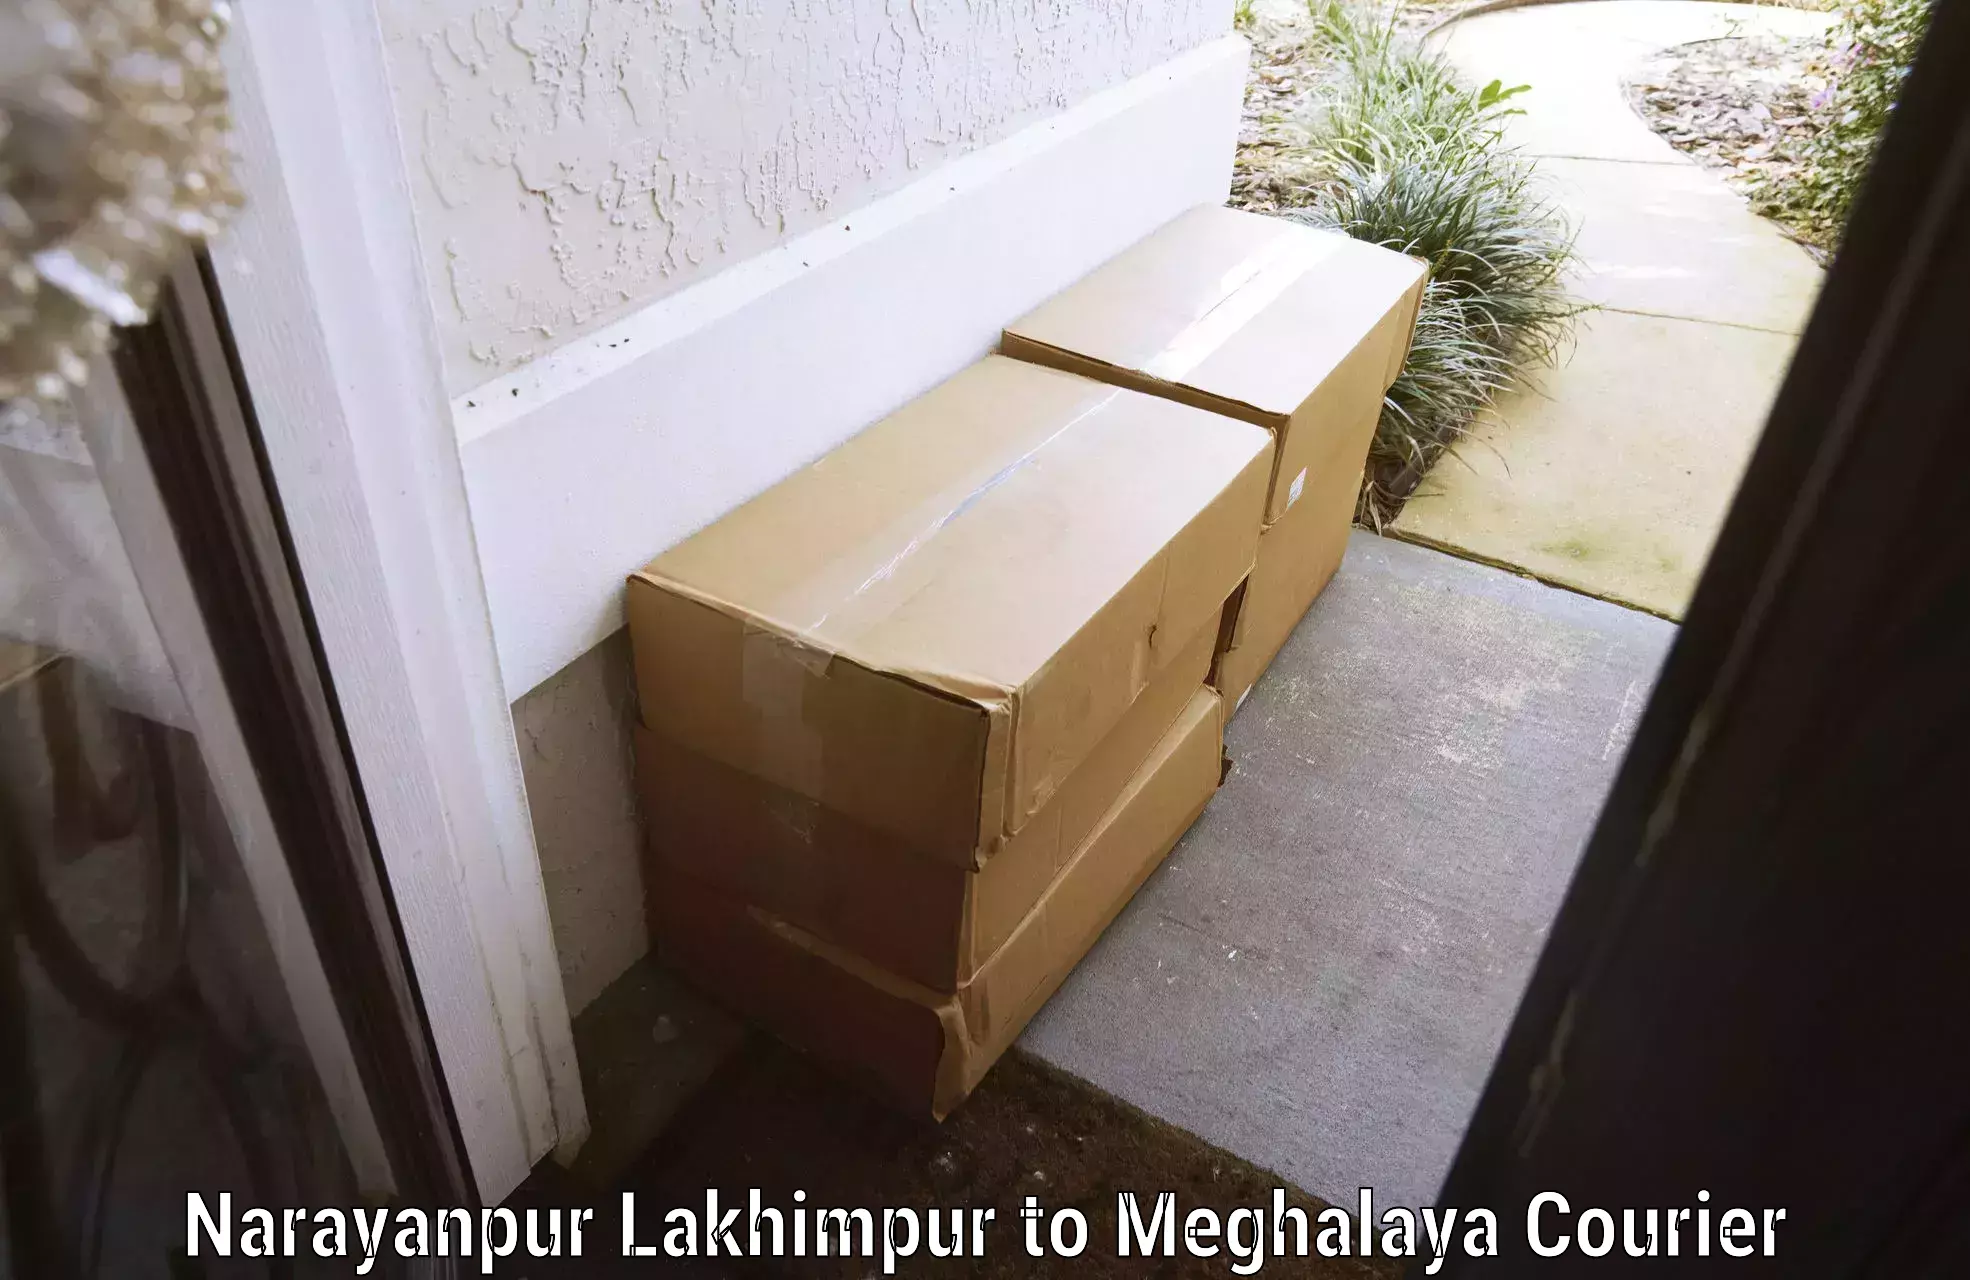 Baggage transport cost Narayanpur Lakhimpur to NIT Meghalaya